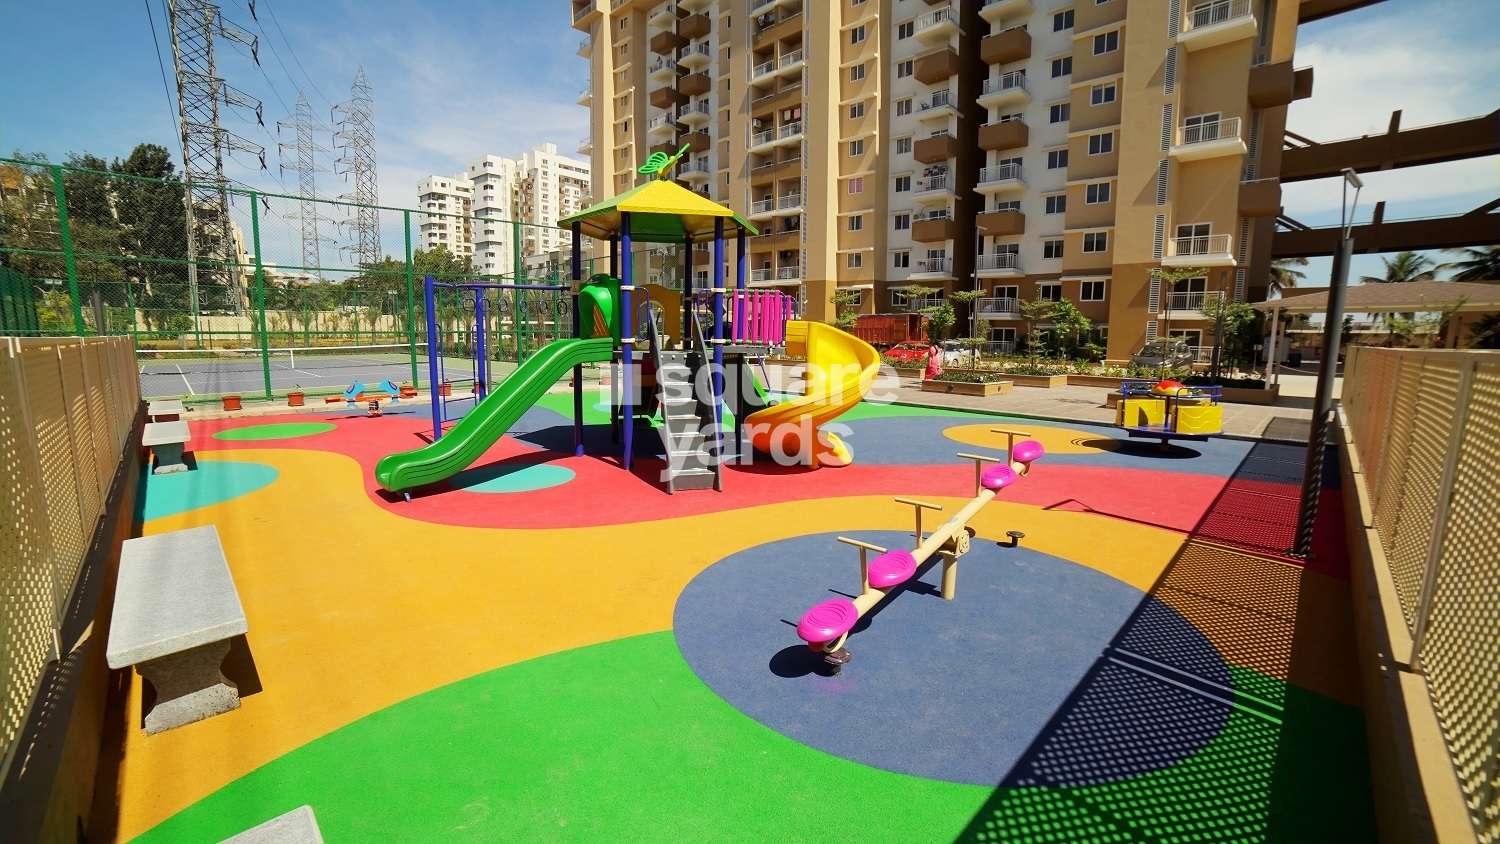 vaswani menlo park project amenities features10 6719